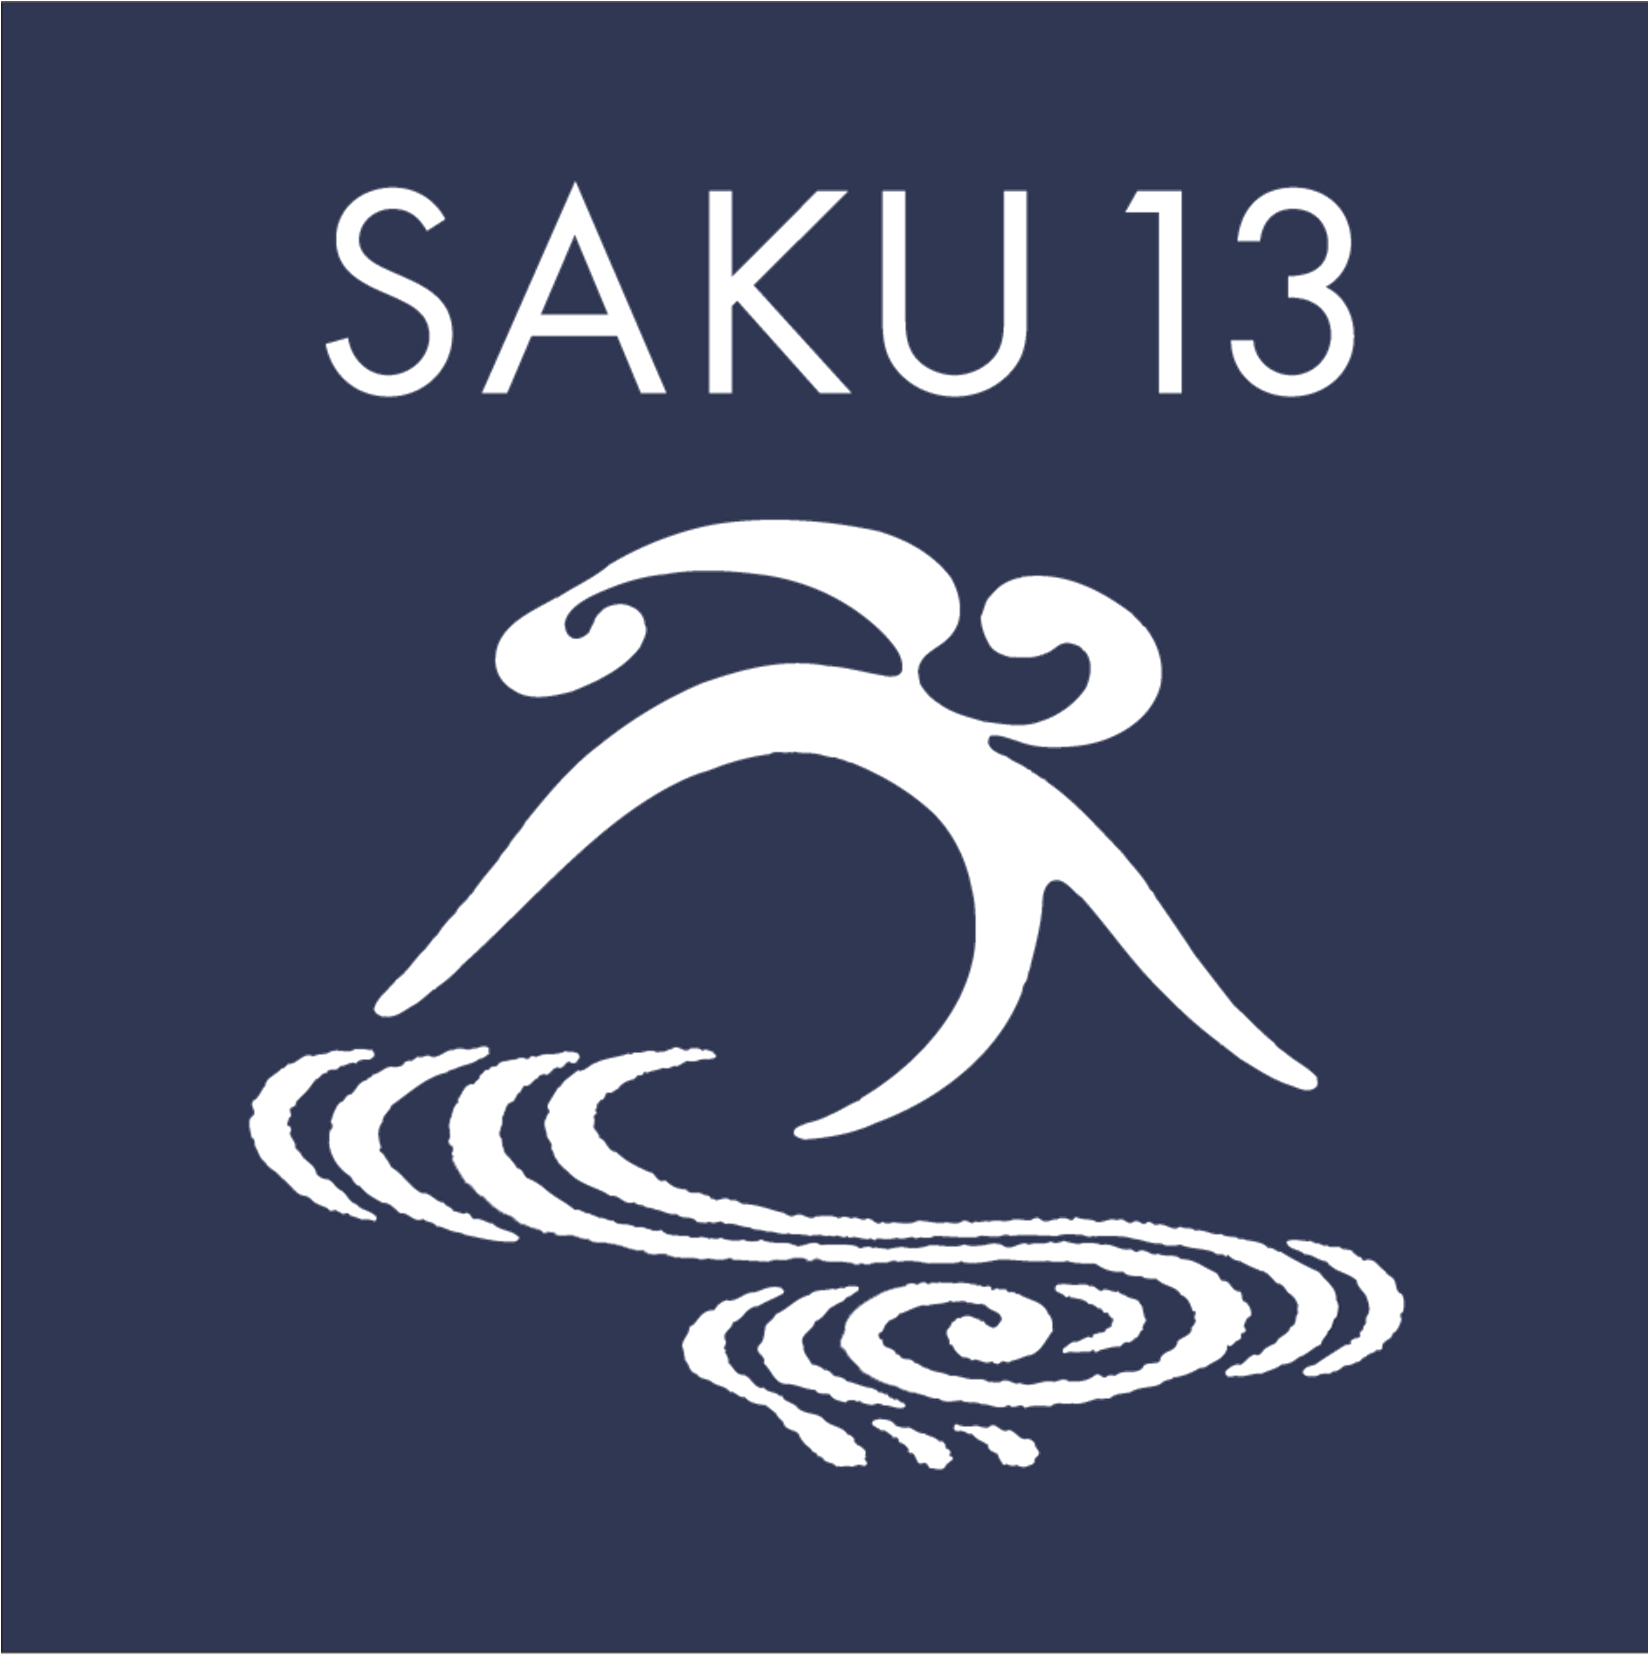 saku13 logo